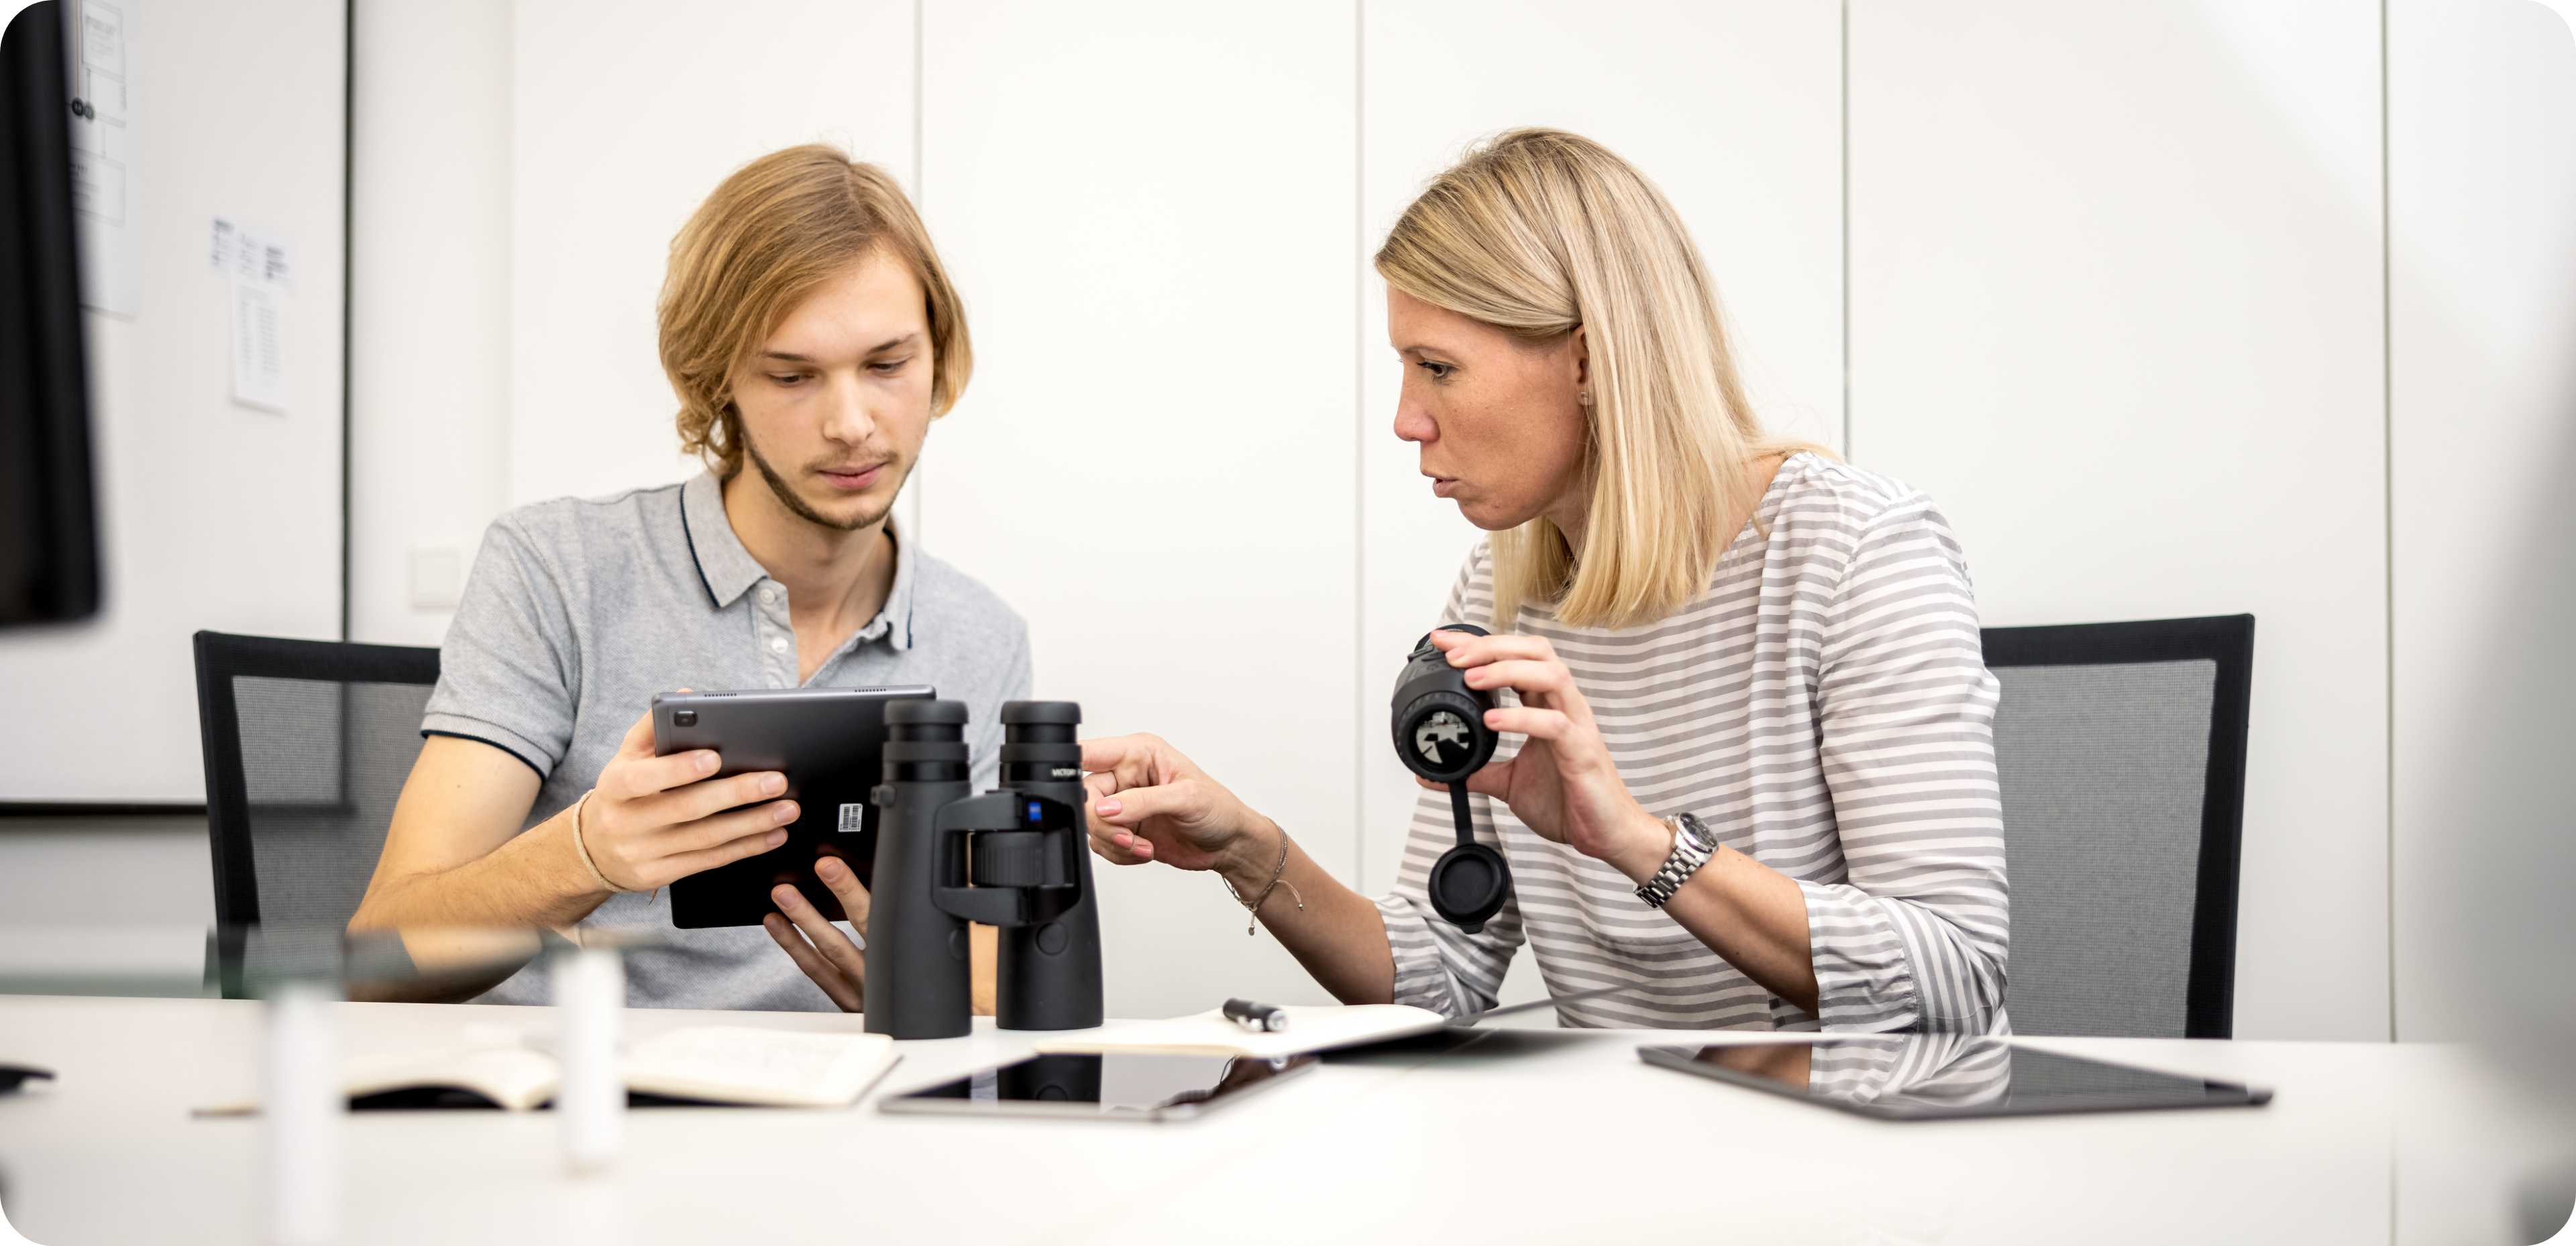 Tobias und Katja testen ZEISS Connected Products | Service Design Wien